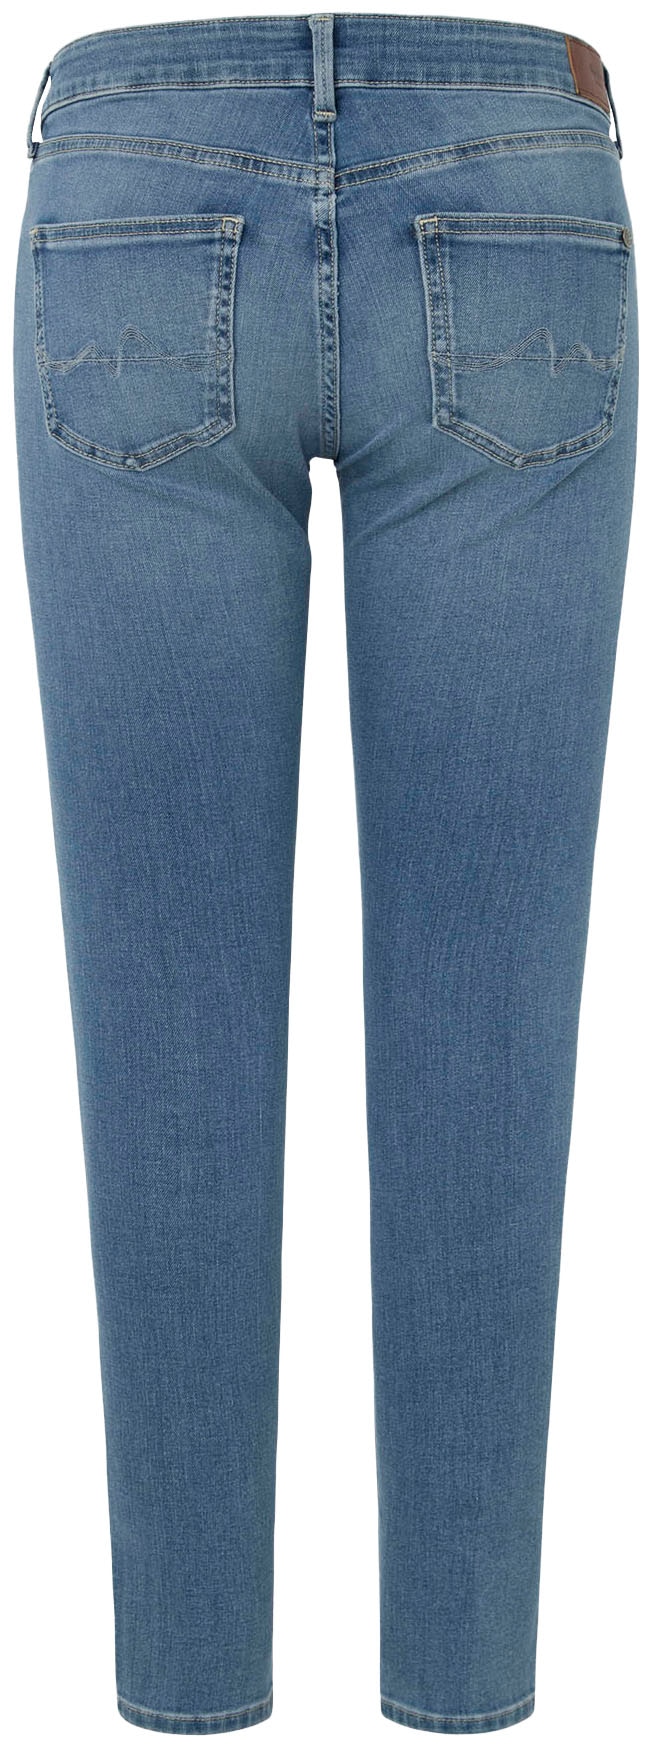 Pepe Jeans Skinny-fit-Jeans »SKINNY JEANS LW«, in verschiedenen Waschungen